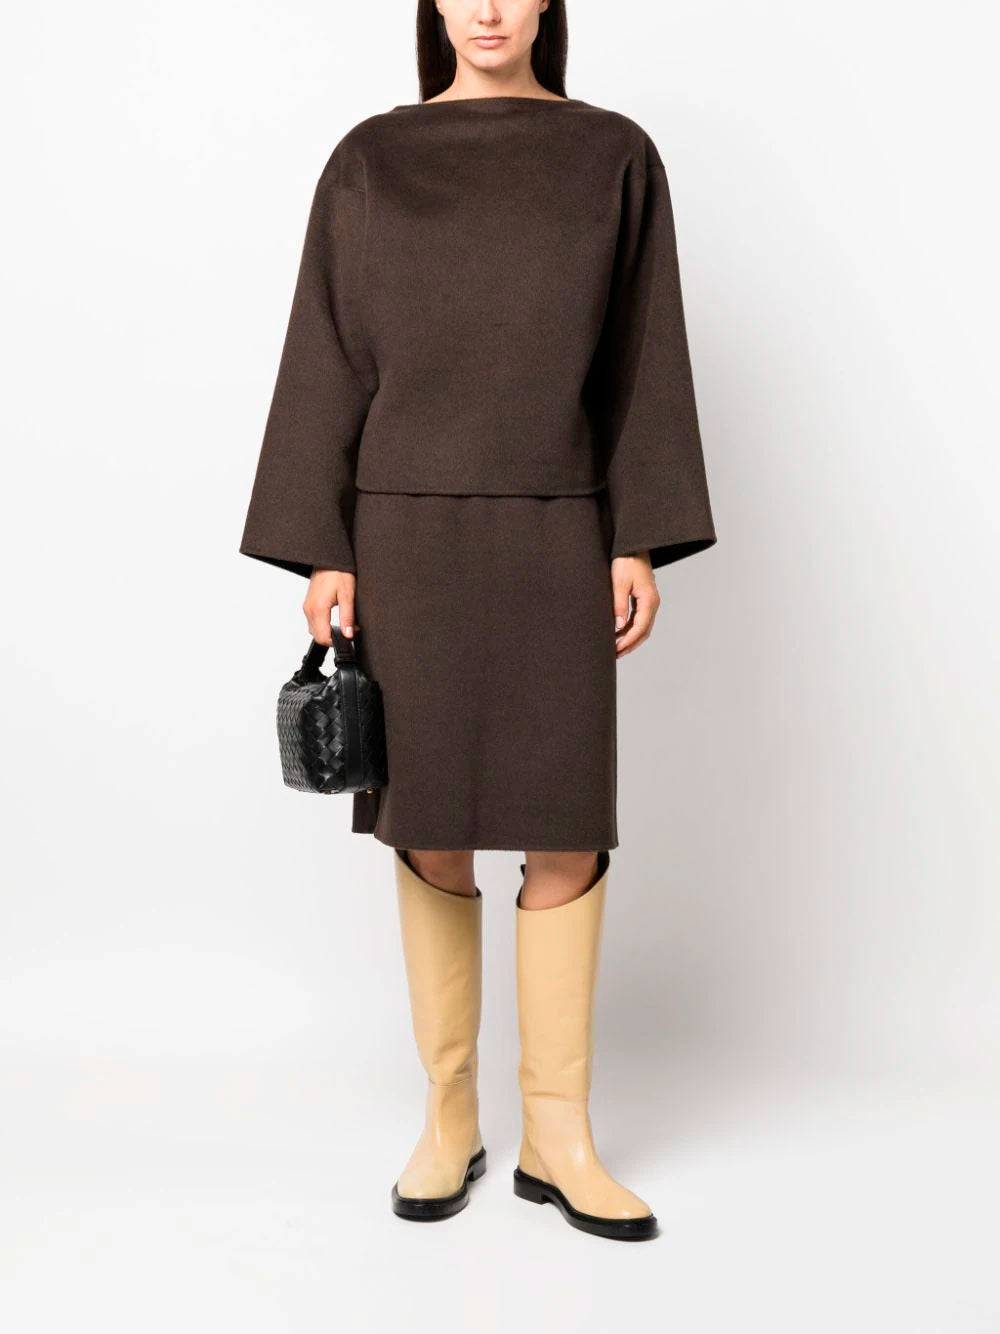 Side-slit wool skirt